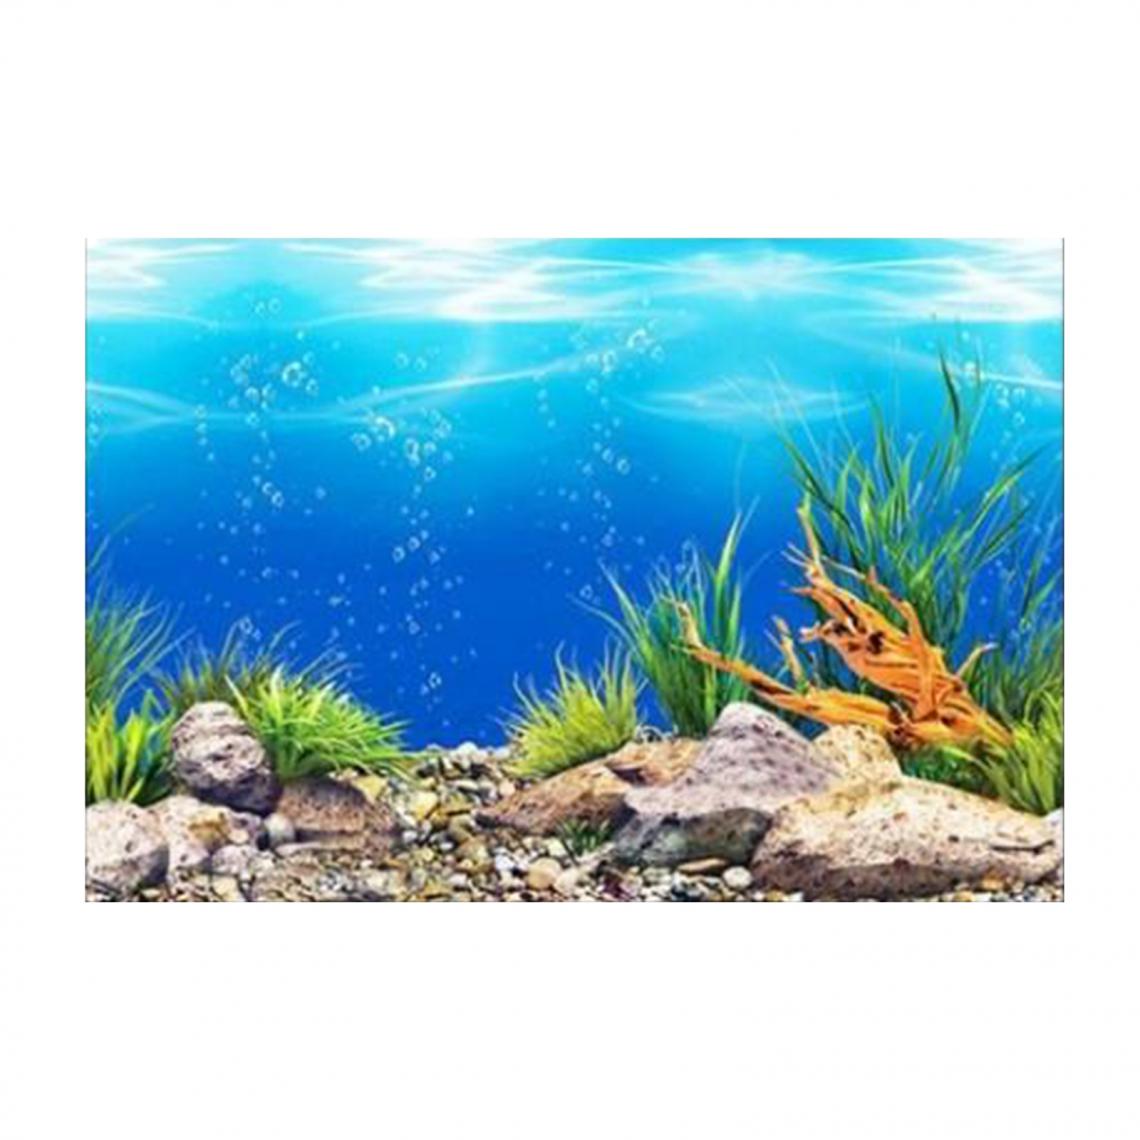 marque generique - Affiche De Fond D'aquarium En PVC Océanique Paysage De Décoration De Réservoir De Poissons 30x52cm - Décoration aquarium